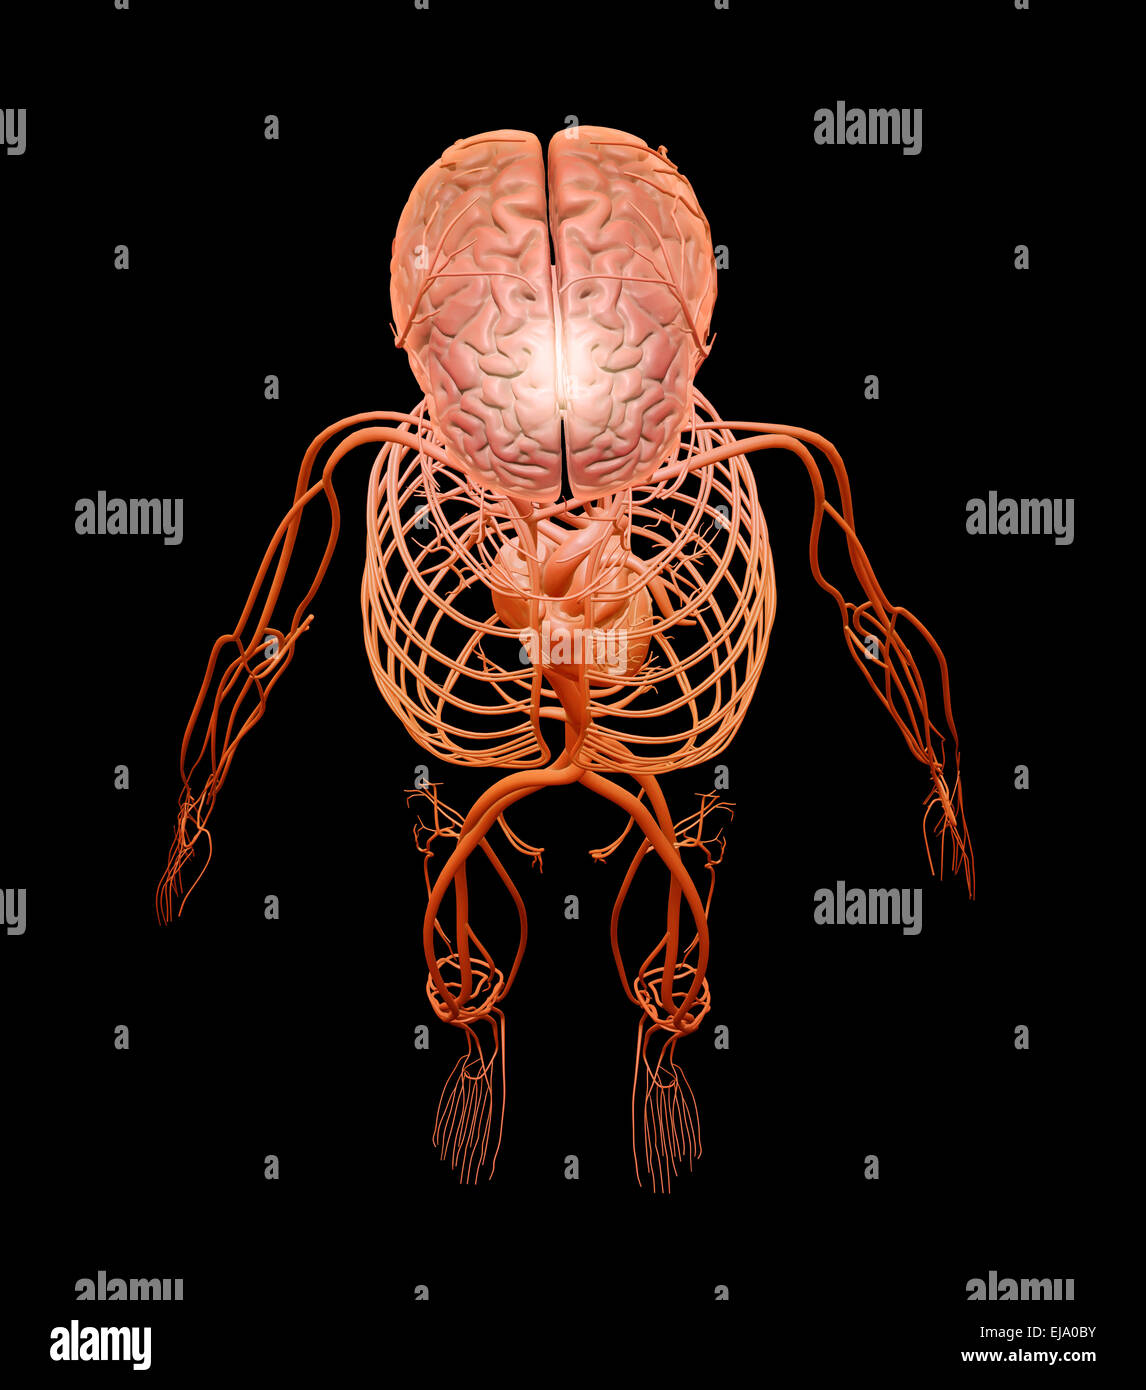 Anatomie humaine - illustration des systèmes circulatoires et nerveux central Banque D'Images